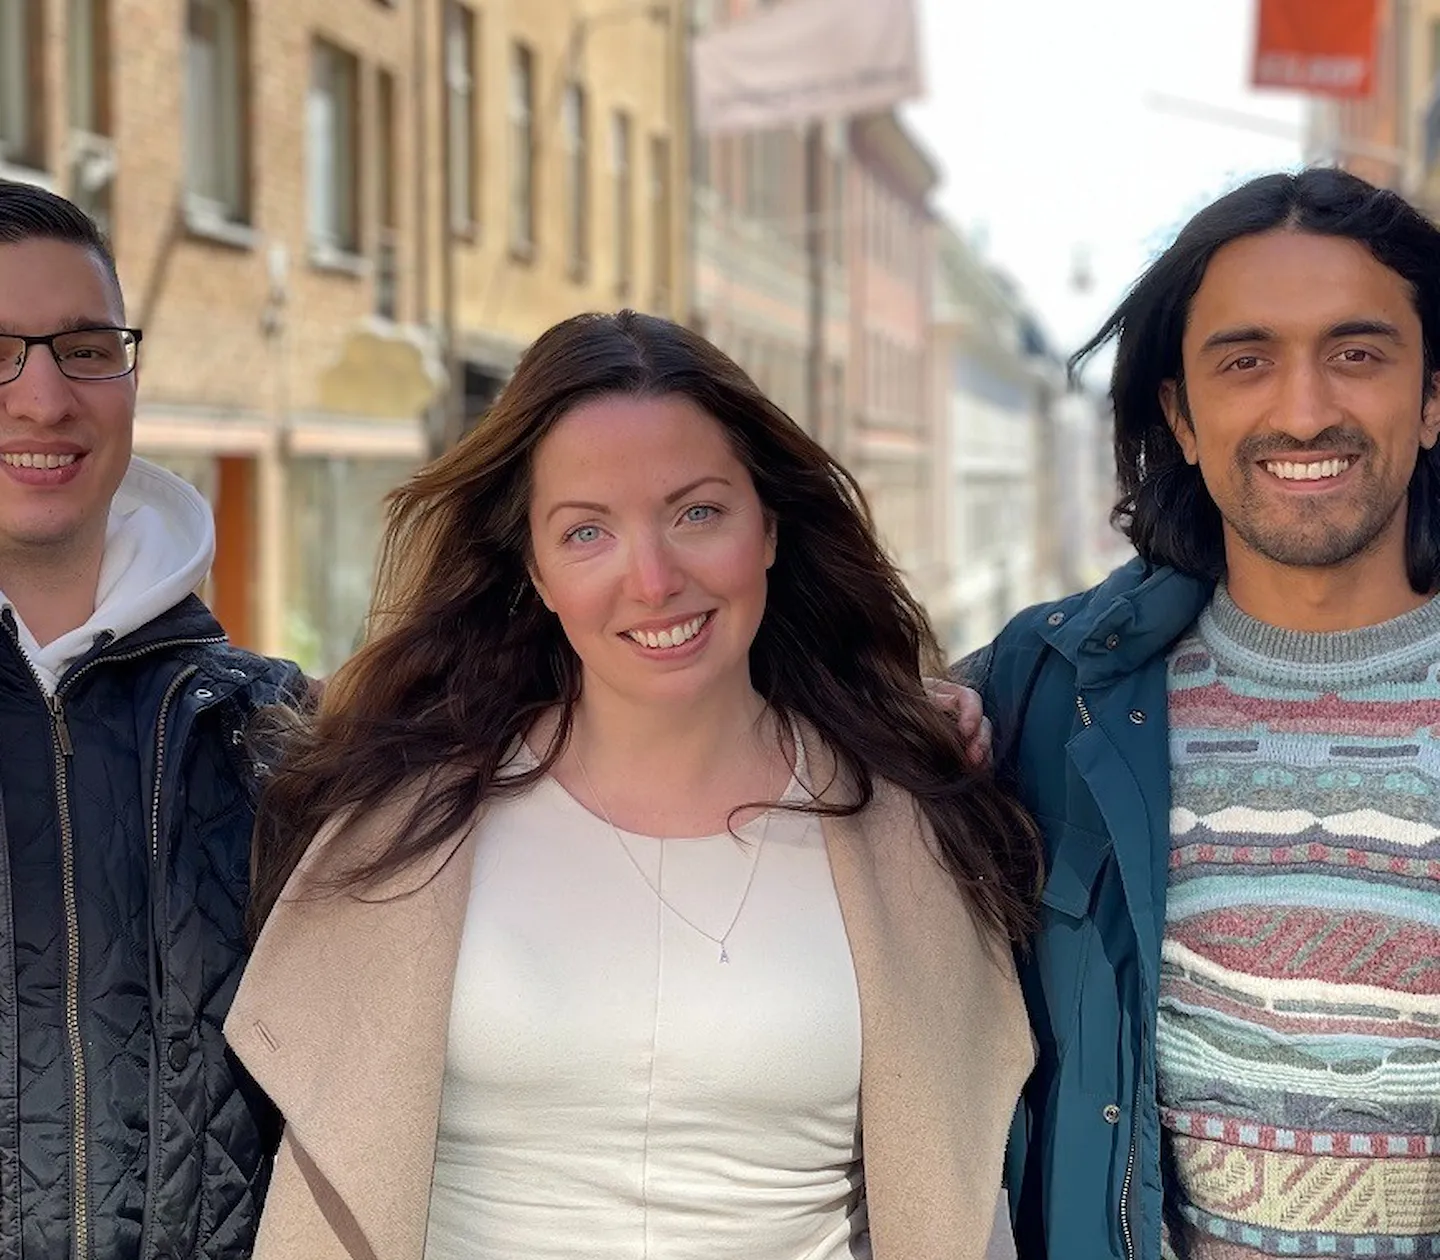 Ahmet, Joy och Sameer i gatumiljö - glada ansikten